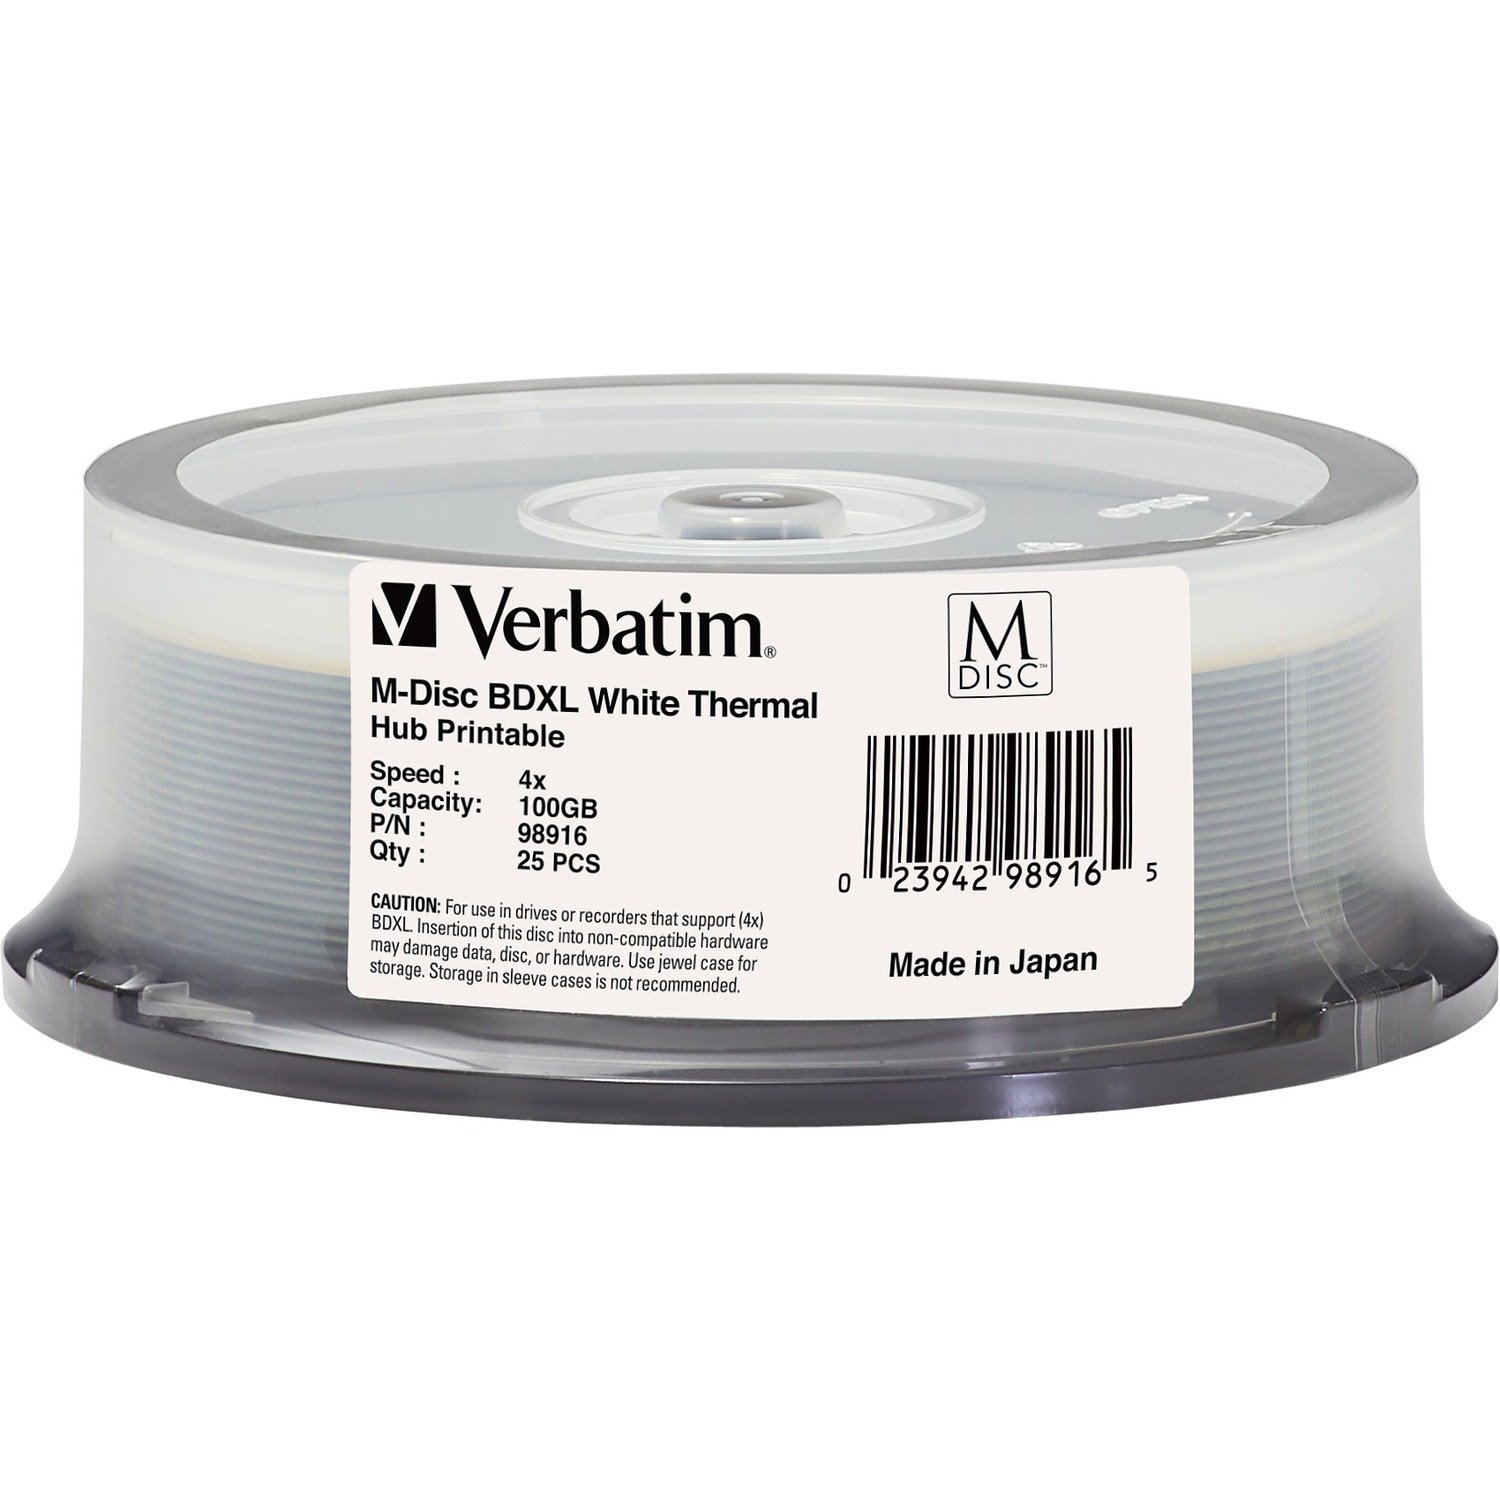 Verbatim M DISC BDXL - 4x - 100 GB - Thermal Printable, Hub Printable - 25pk Spindle